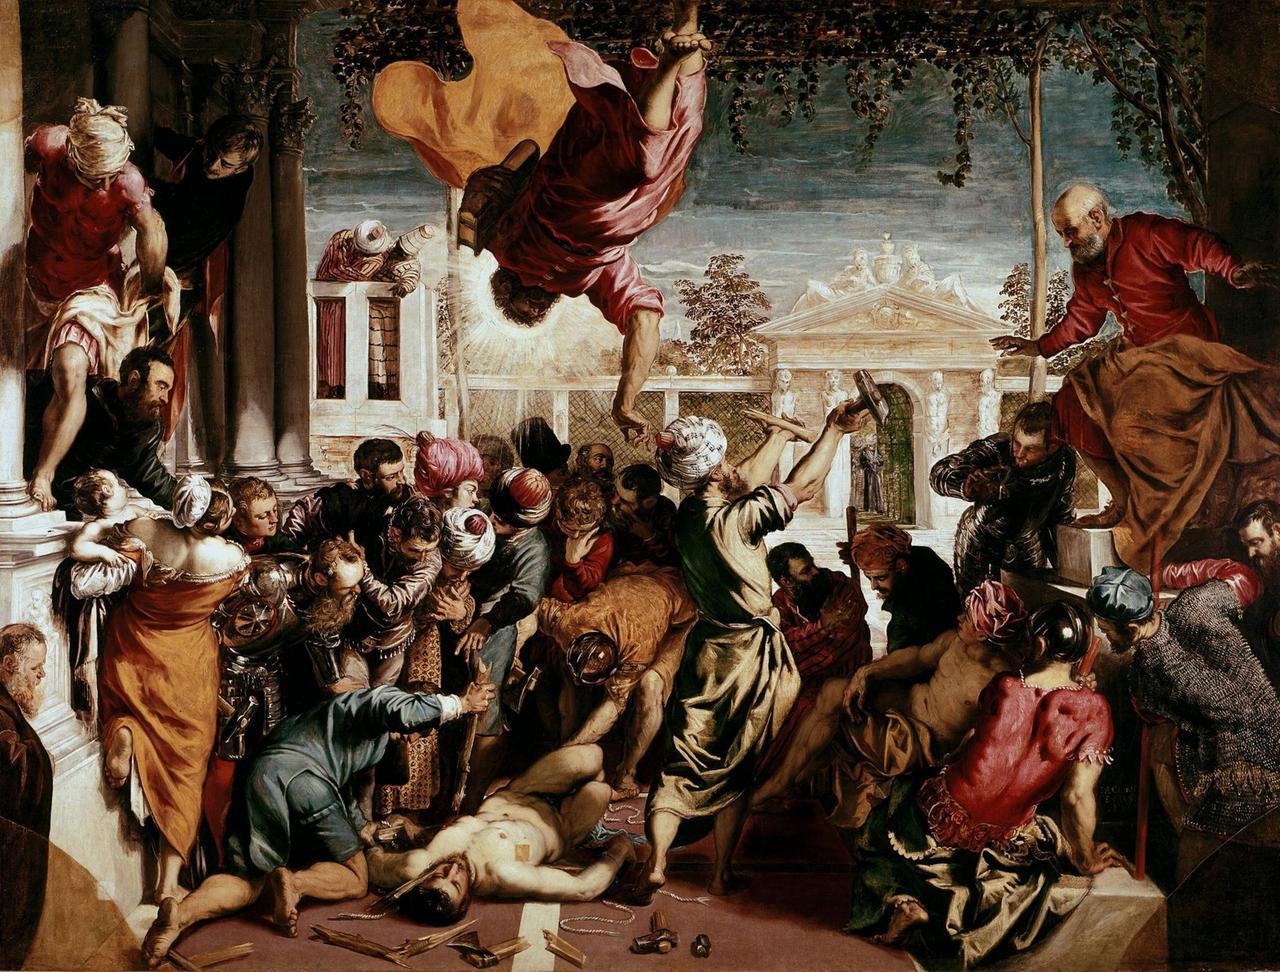 Das Gemälde Tintorettos zeigt, wie der Heilige Markus den Sklaven vor seinen Häschern rettet. Der Heilige wird dabei kopfüber von oben kommend dargestellt.
